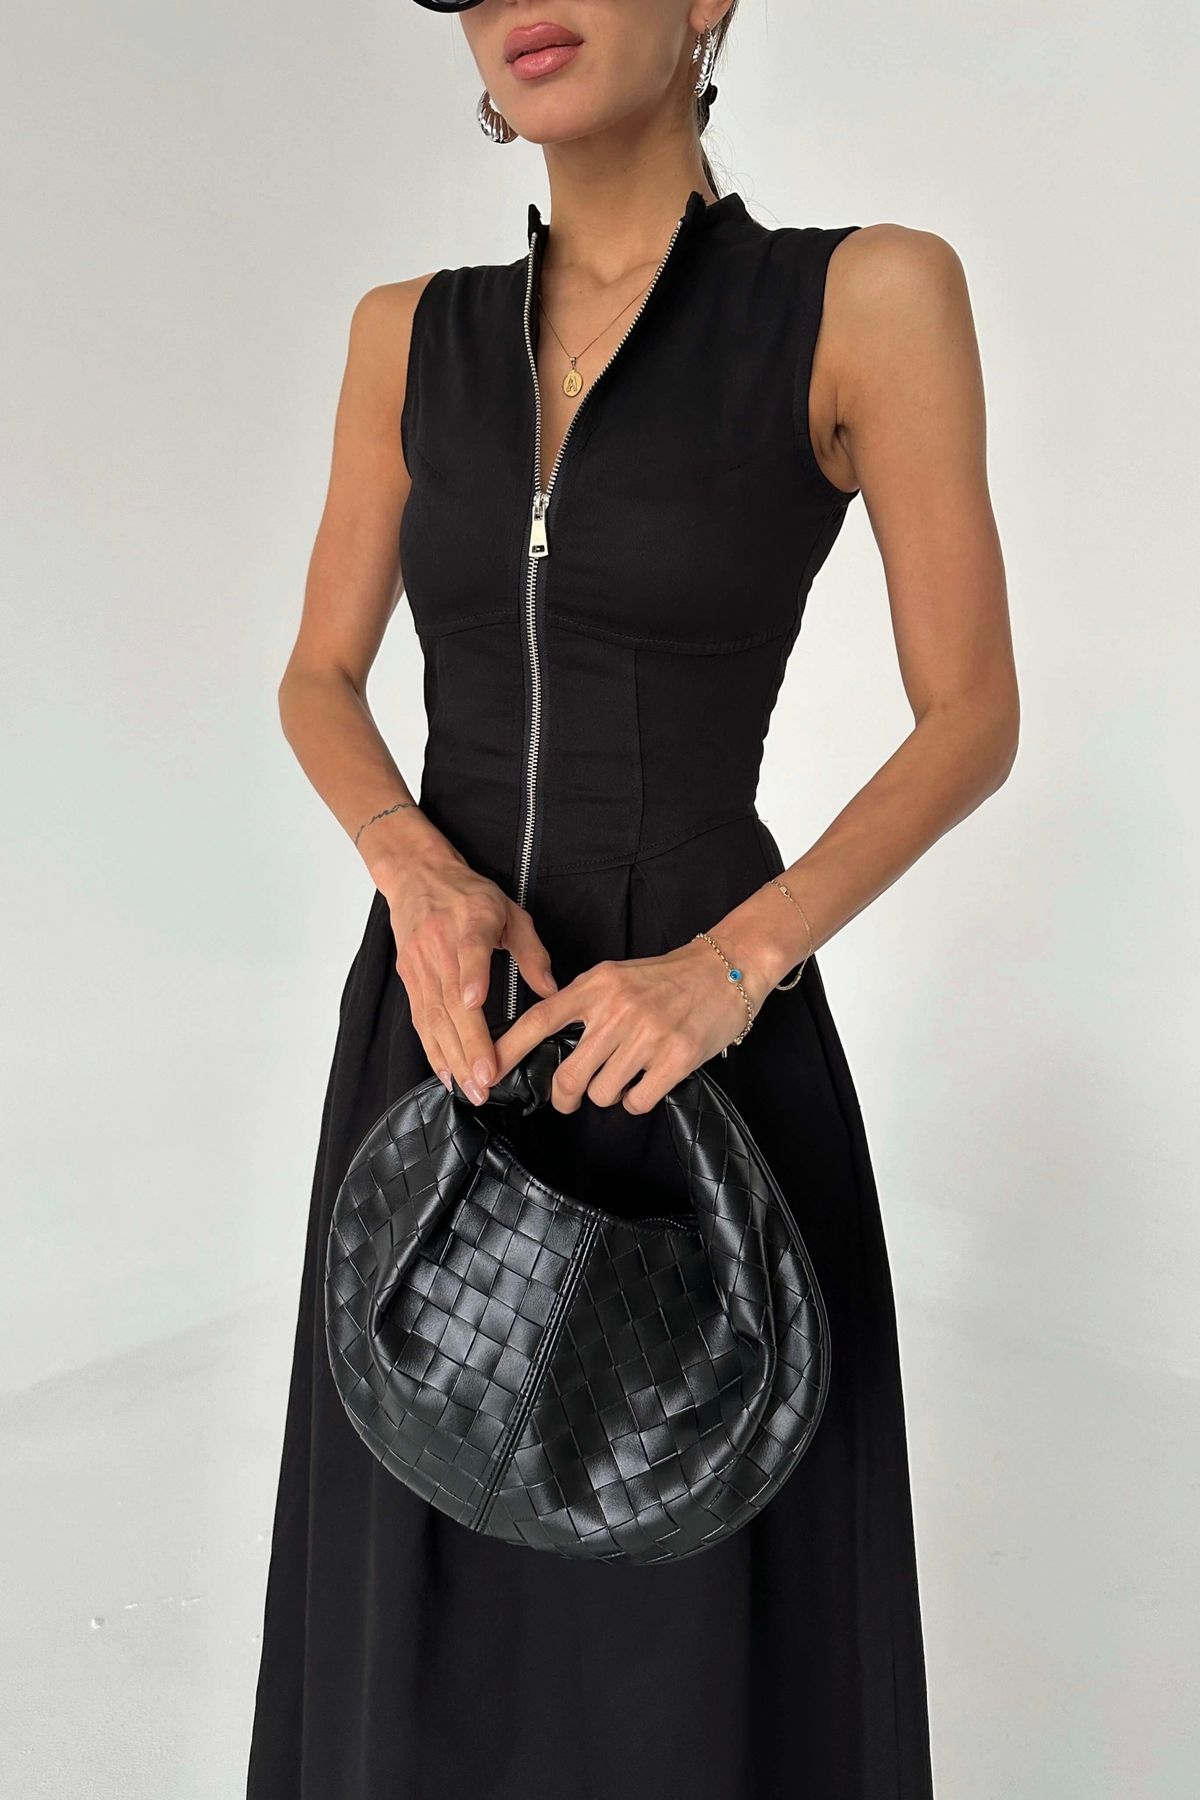 Eka Kadın Siyah Fermuar Detay Elbise 1007-2024-02